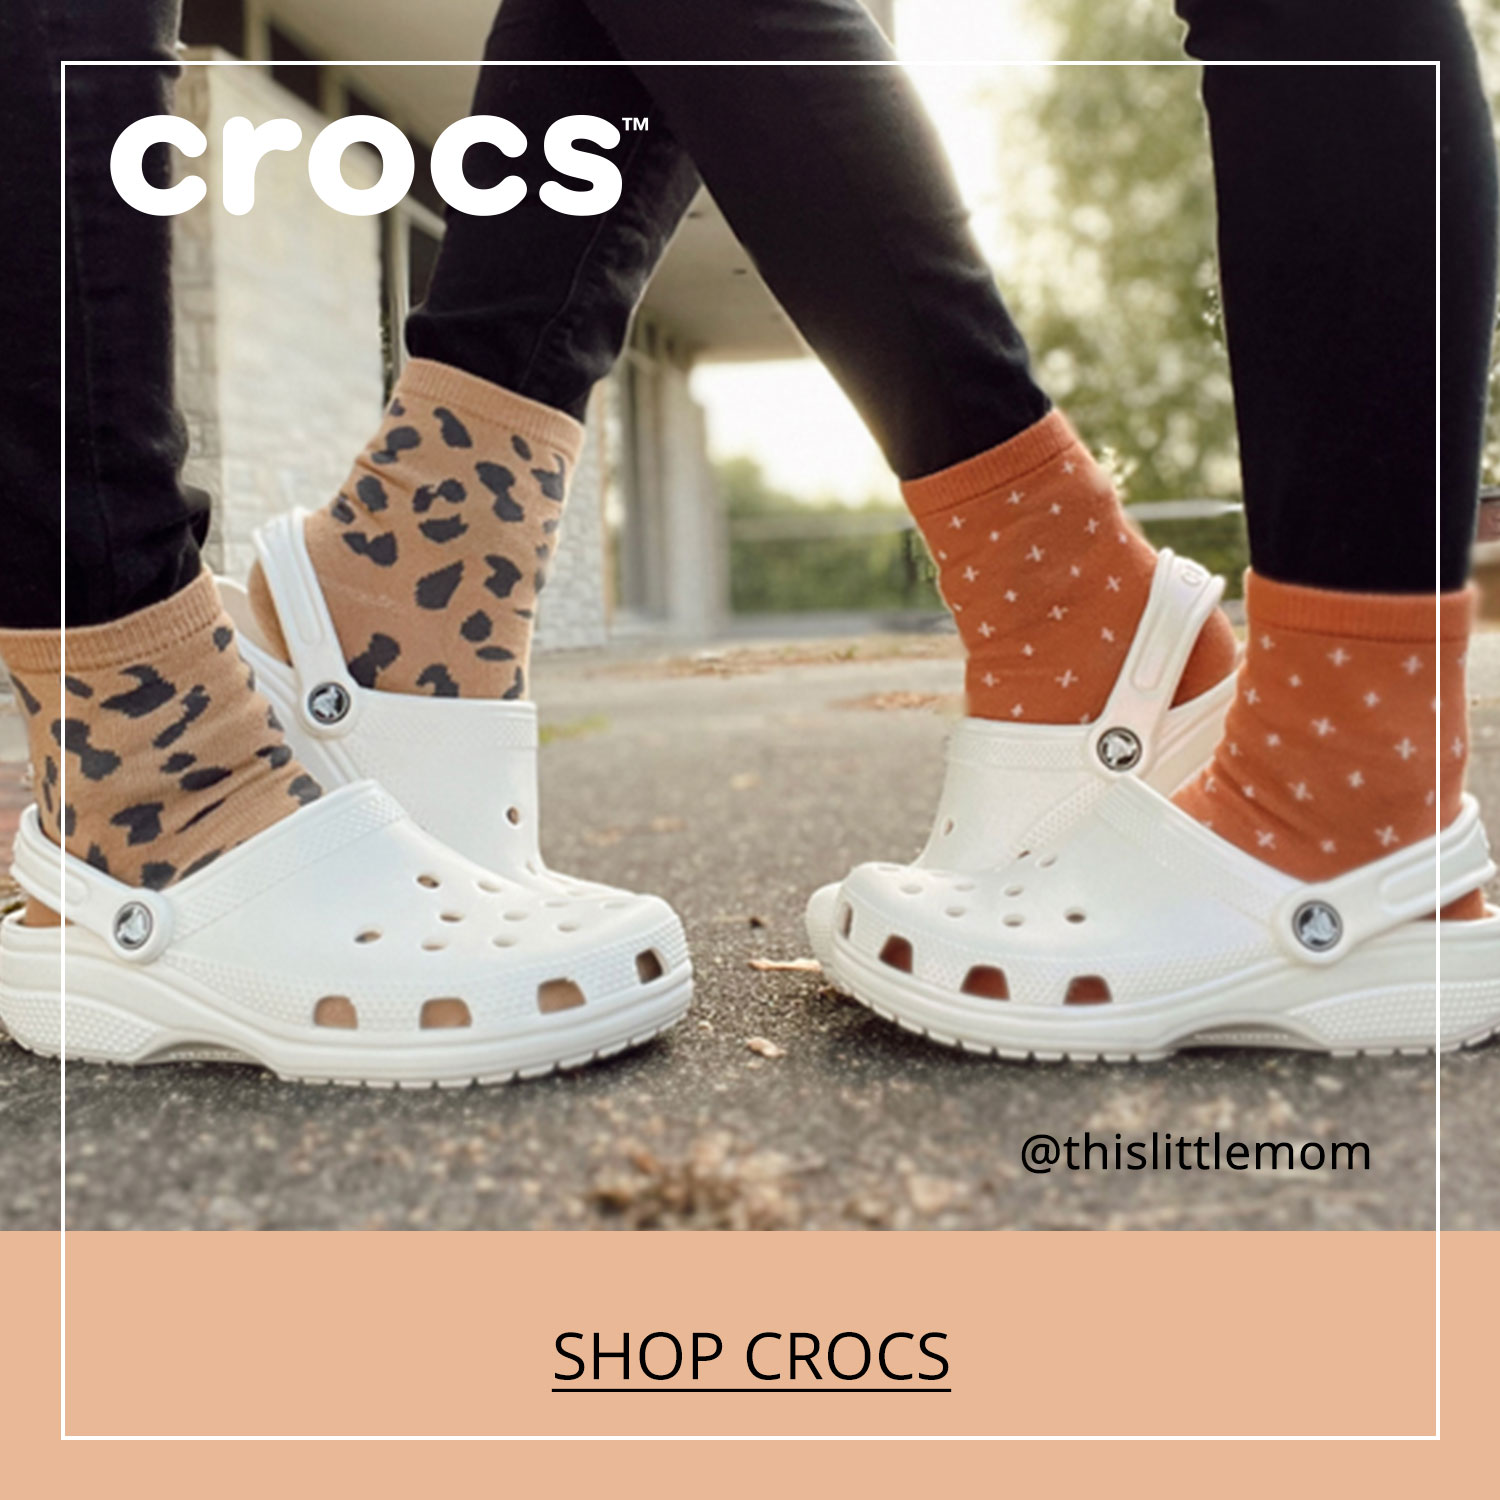 White Crocs Classic Men's/Women's Clog, Crocs Little/Big Kid Classic Girls' Clog